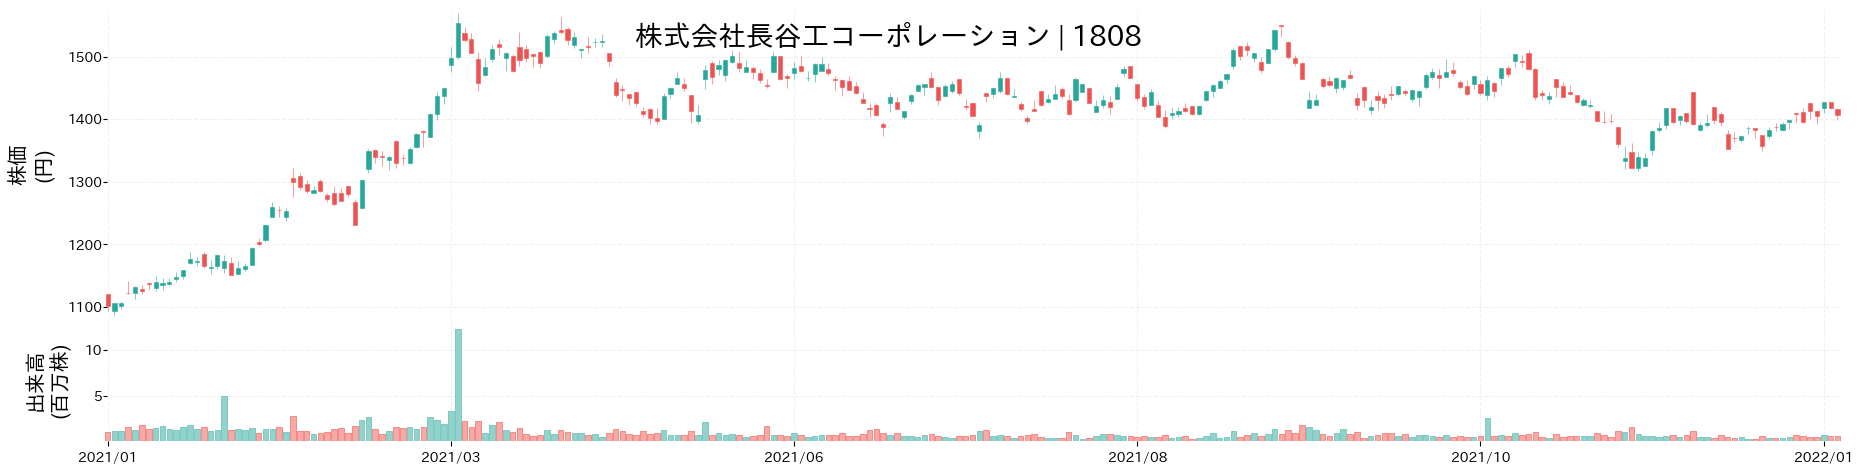 長谷工コーポレーションの株価推移(2021)